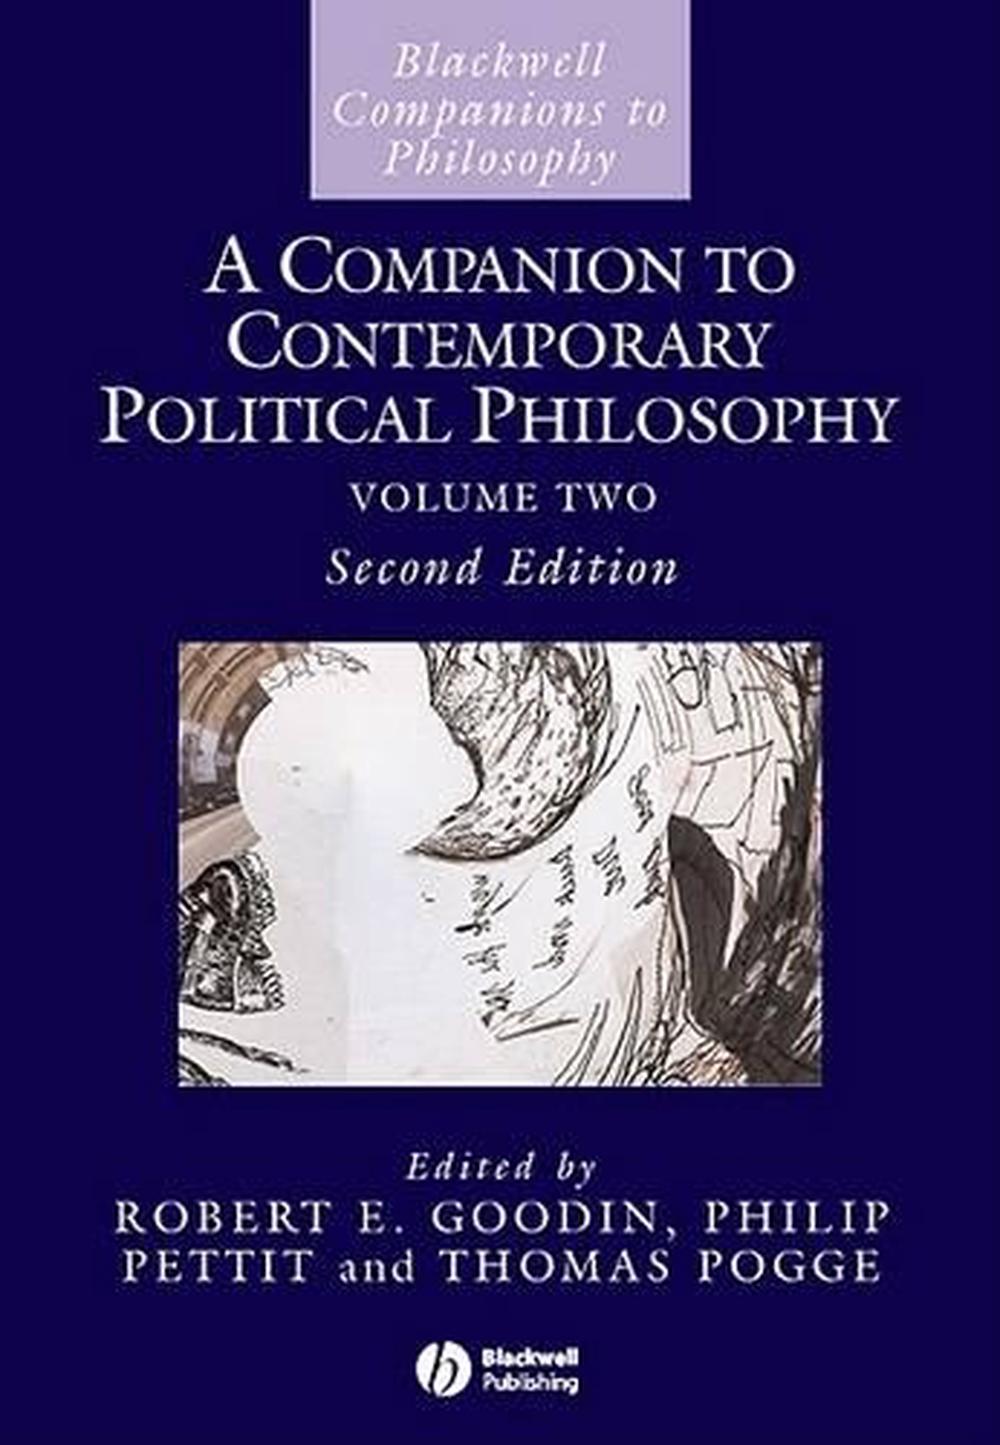 Современная политическая философия. Blackwell Companion to Philosophy. Political Philosophy книга. Filosofia Contemporary.